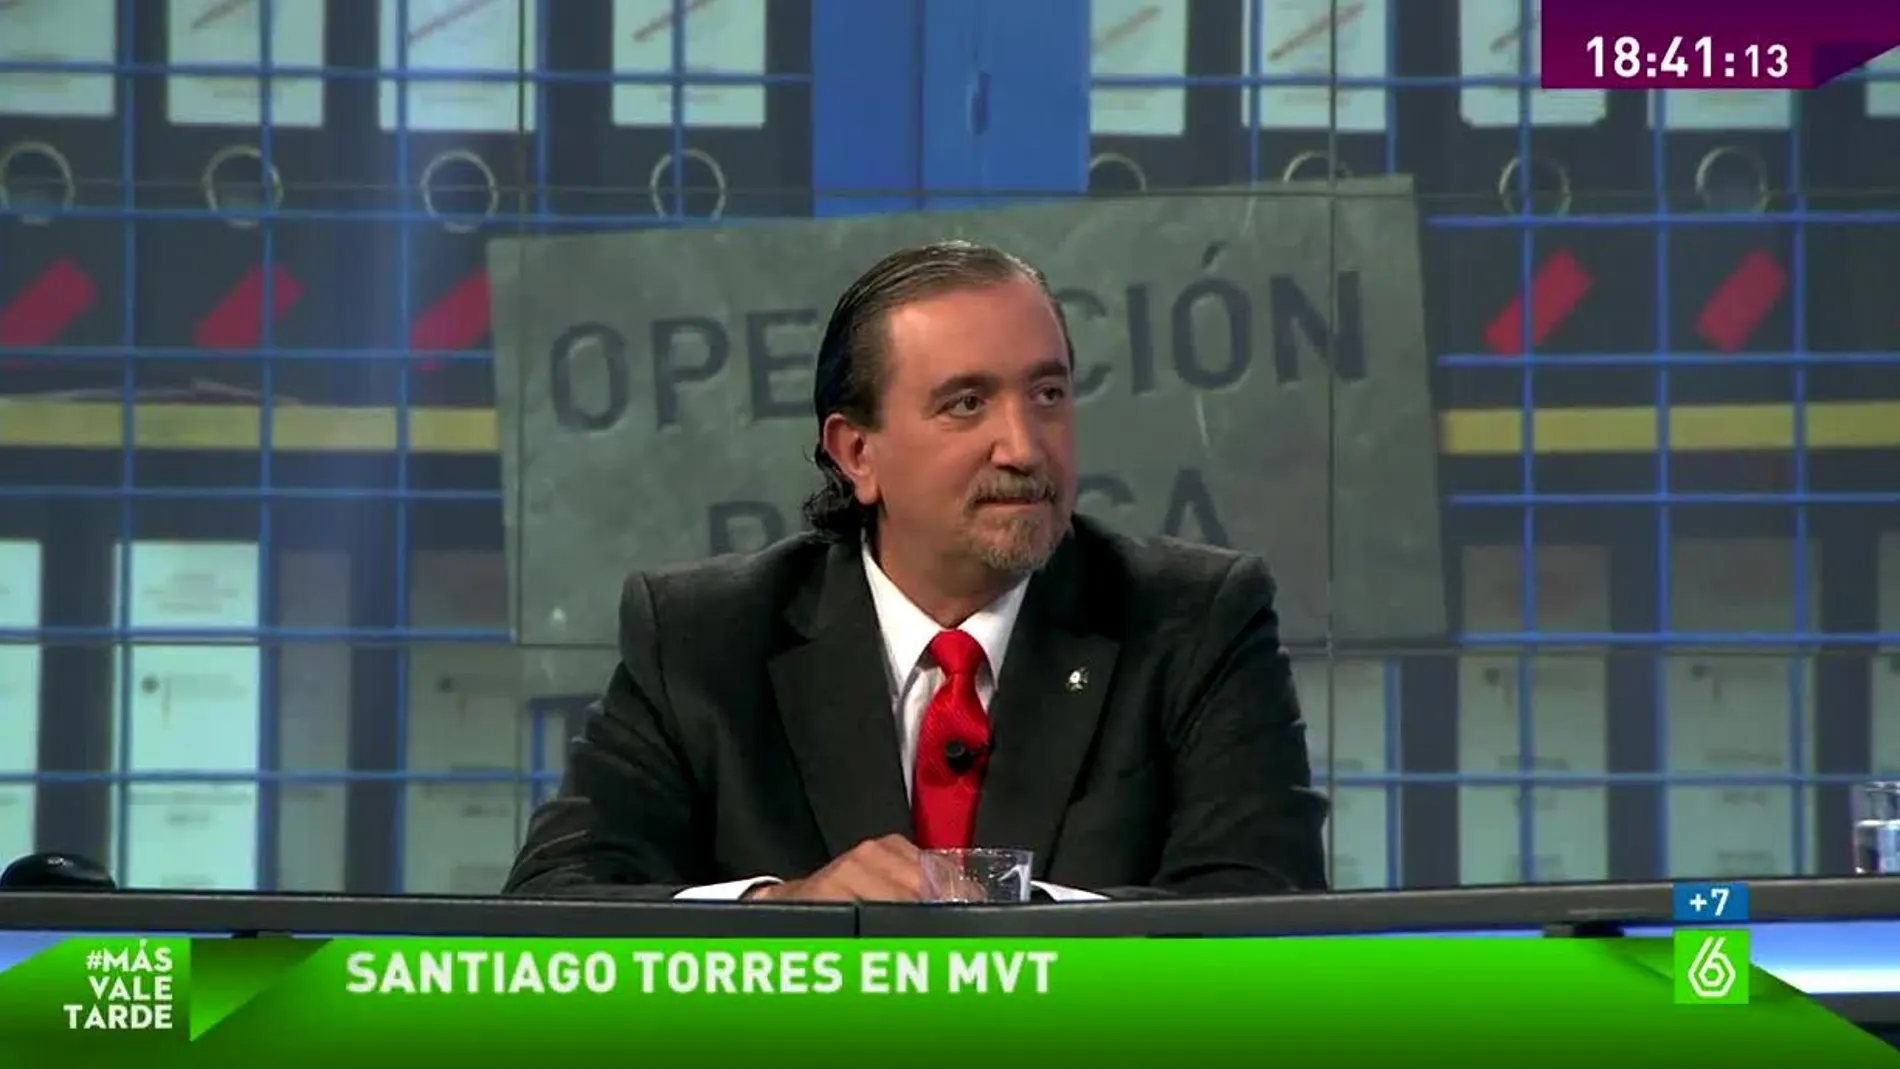 Santiago Torres en MVT